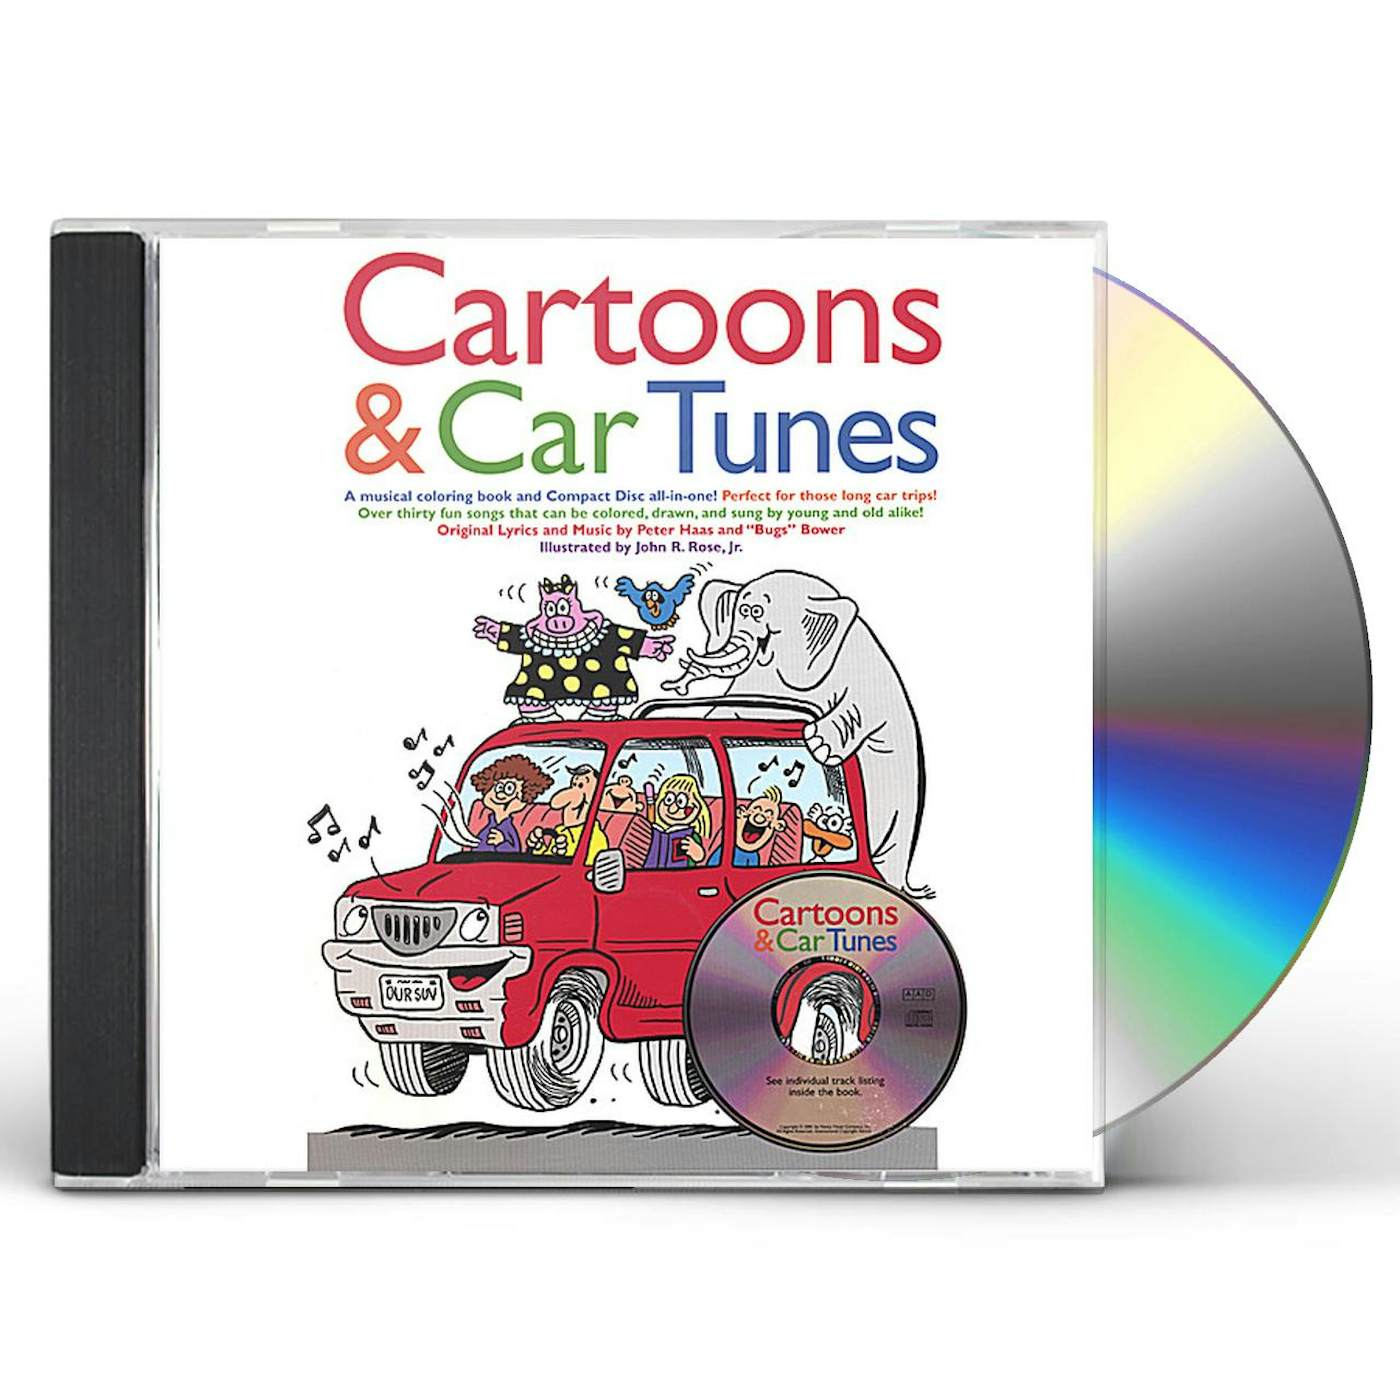 "Bugs" Bower CARTOONS & CAR TUNES CD